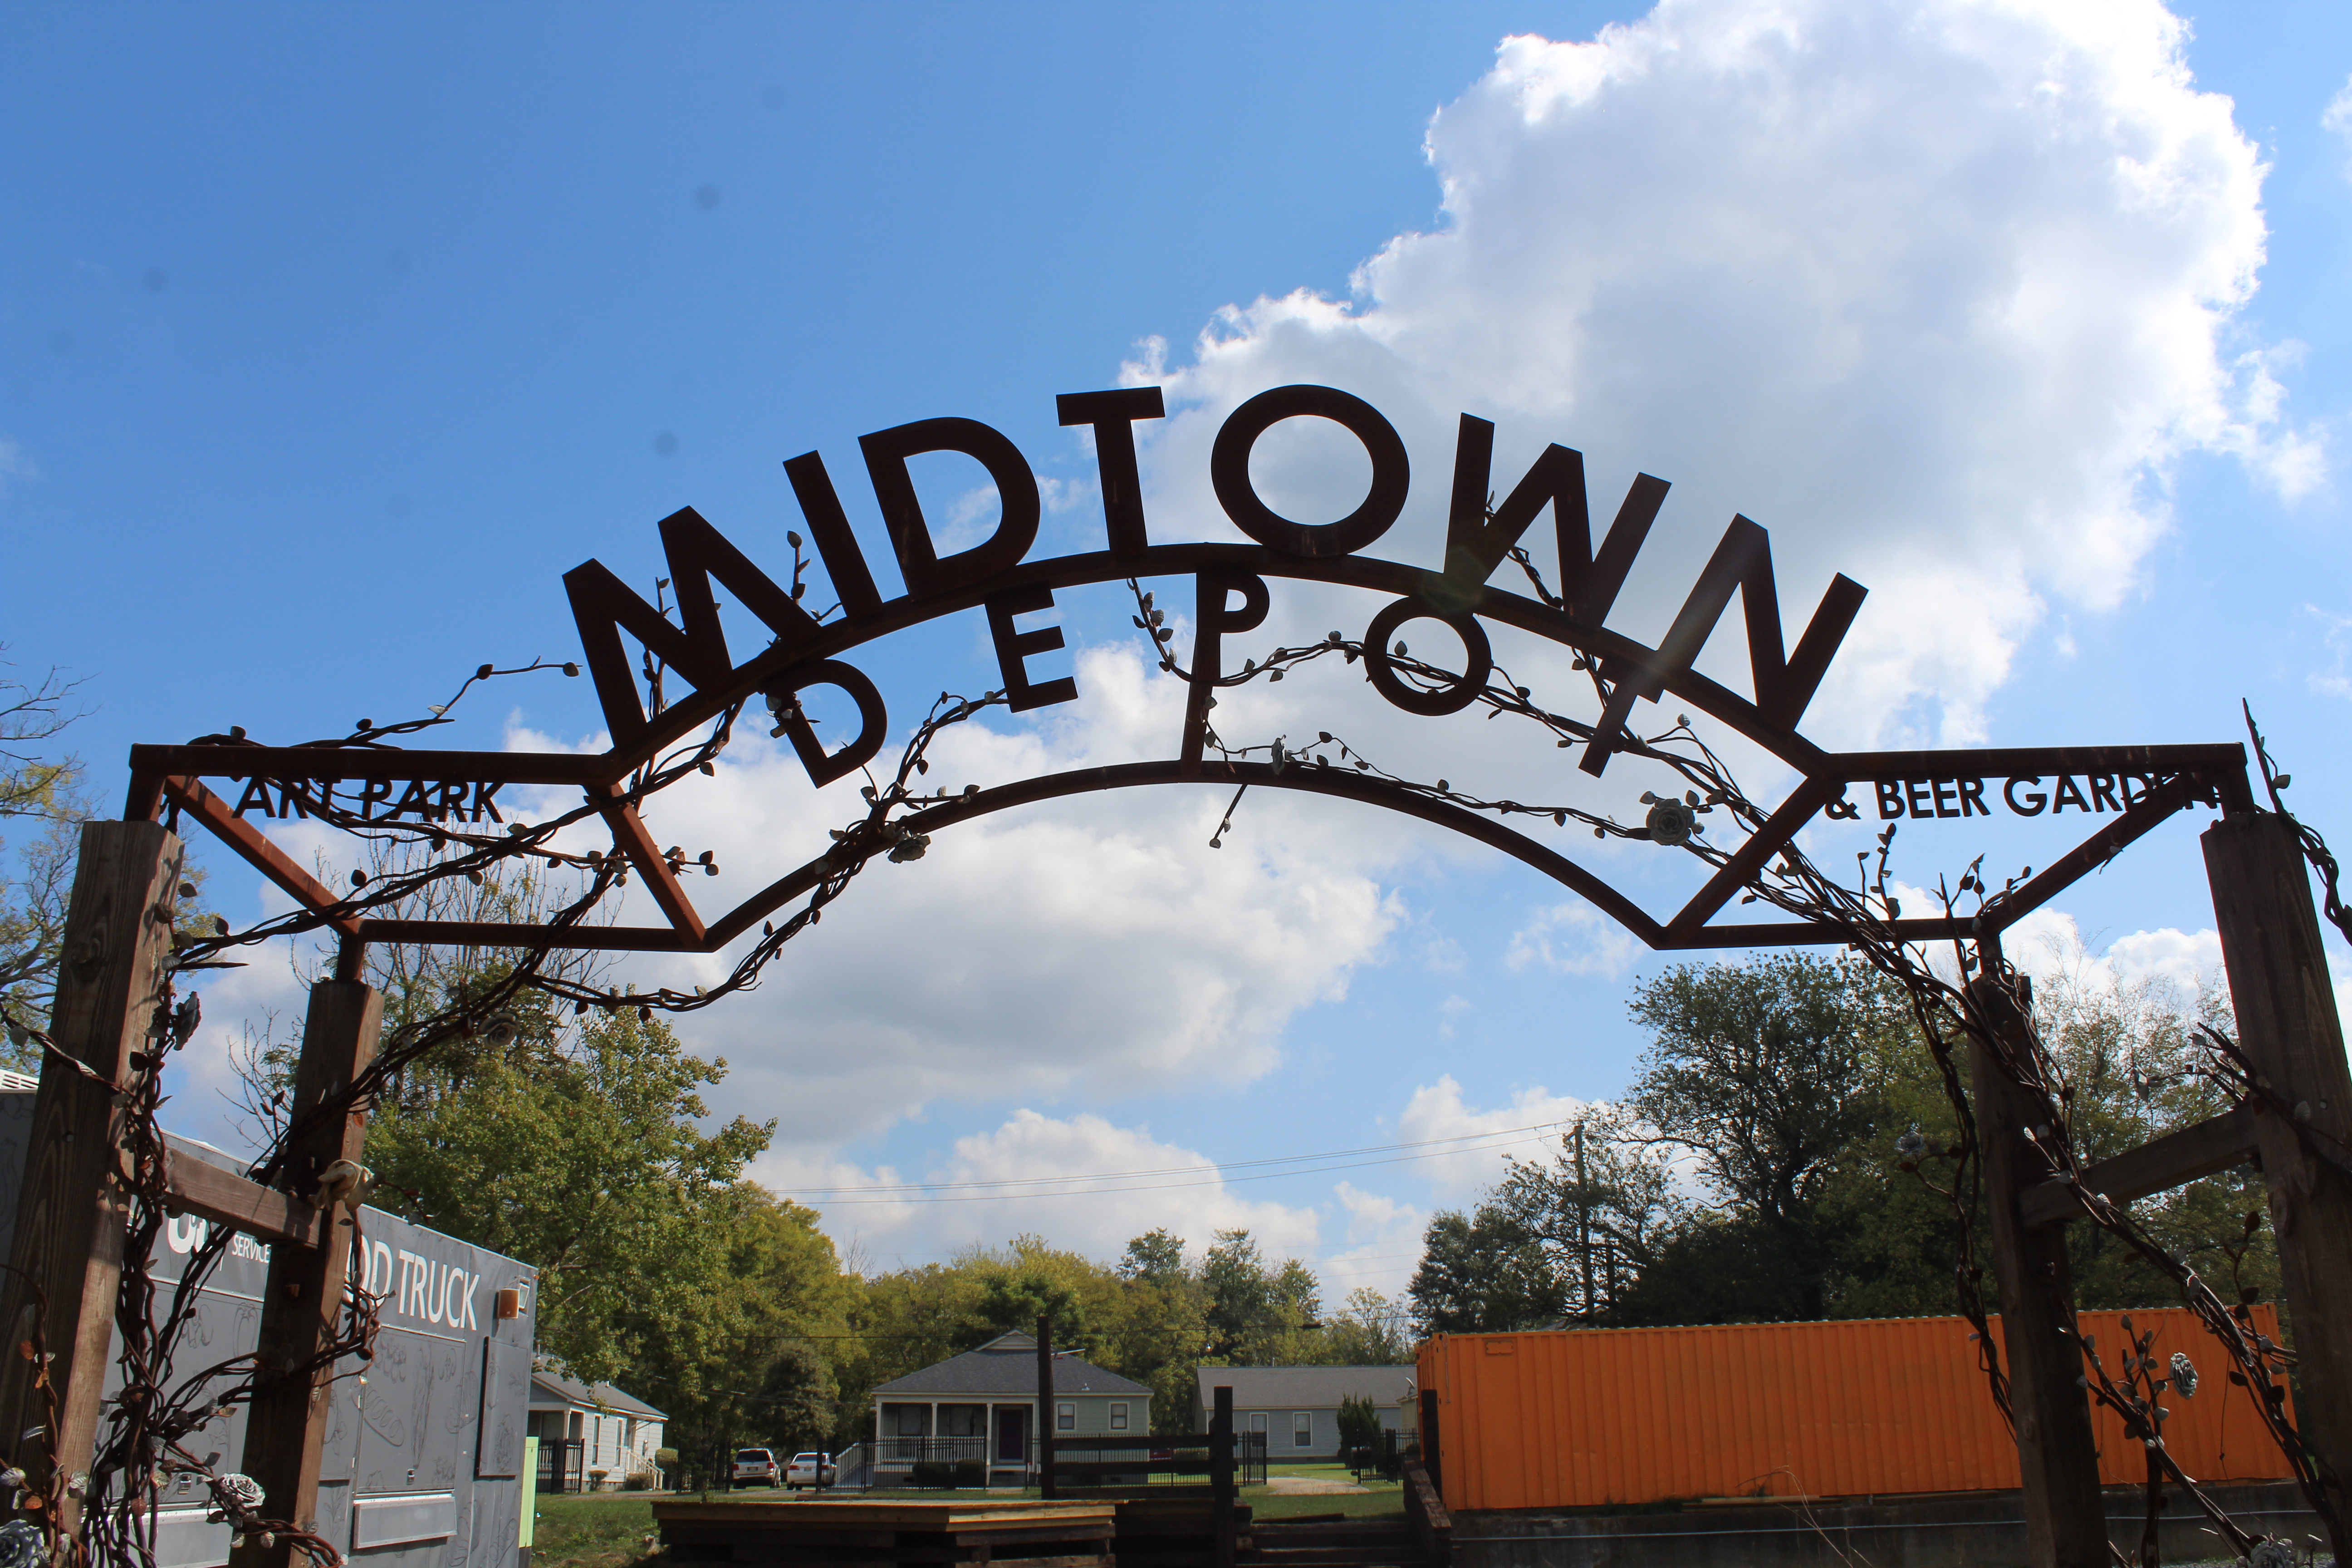 Midtown Depot